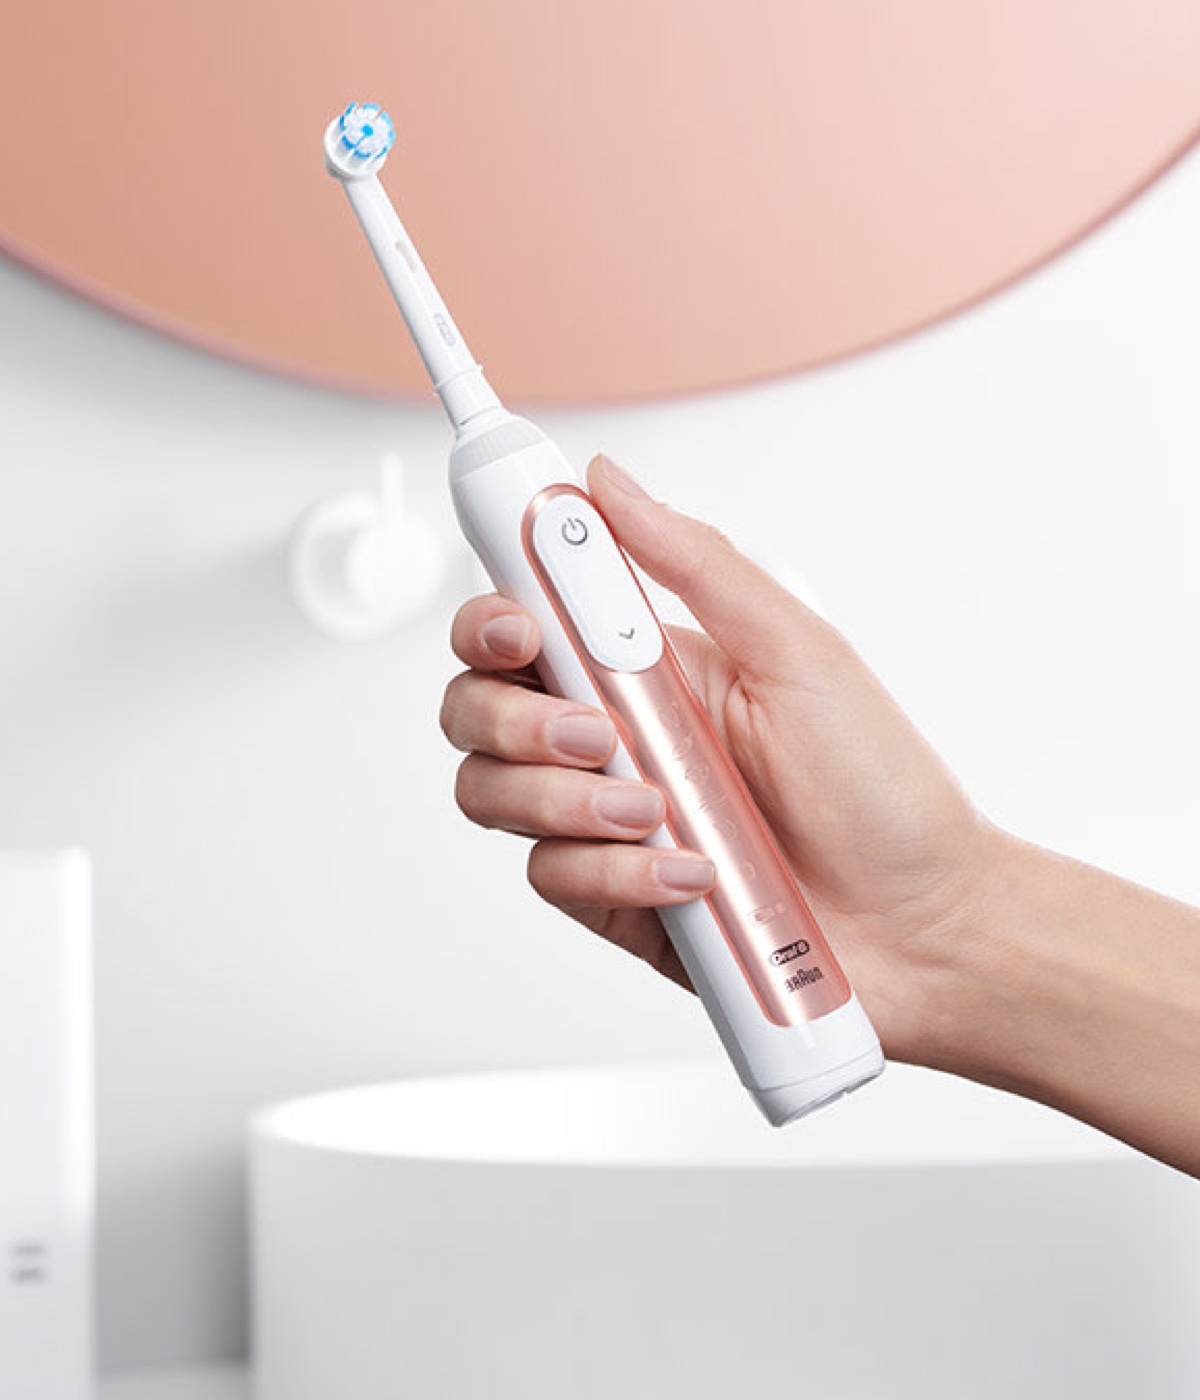 Mulher a segurar uma escova de dentes elétrica Oral-B Genius X em rosa dourado undefined